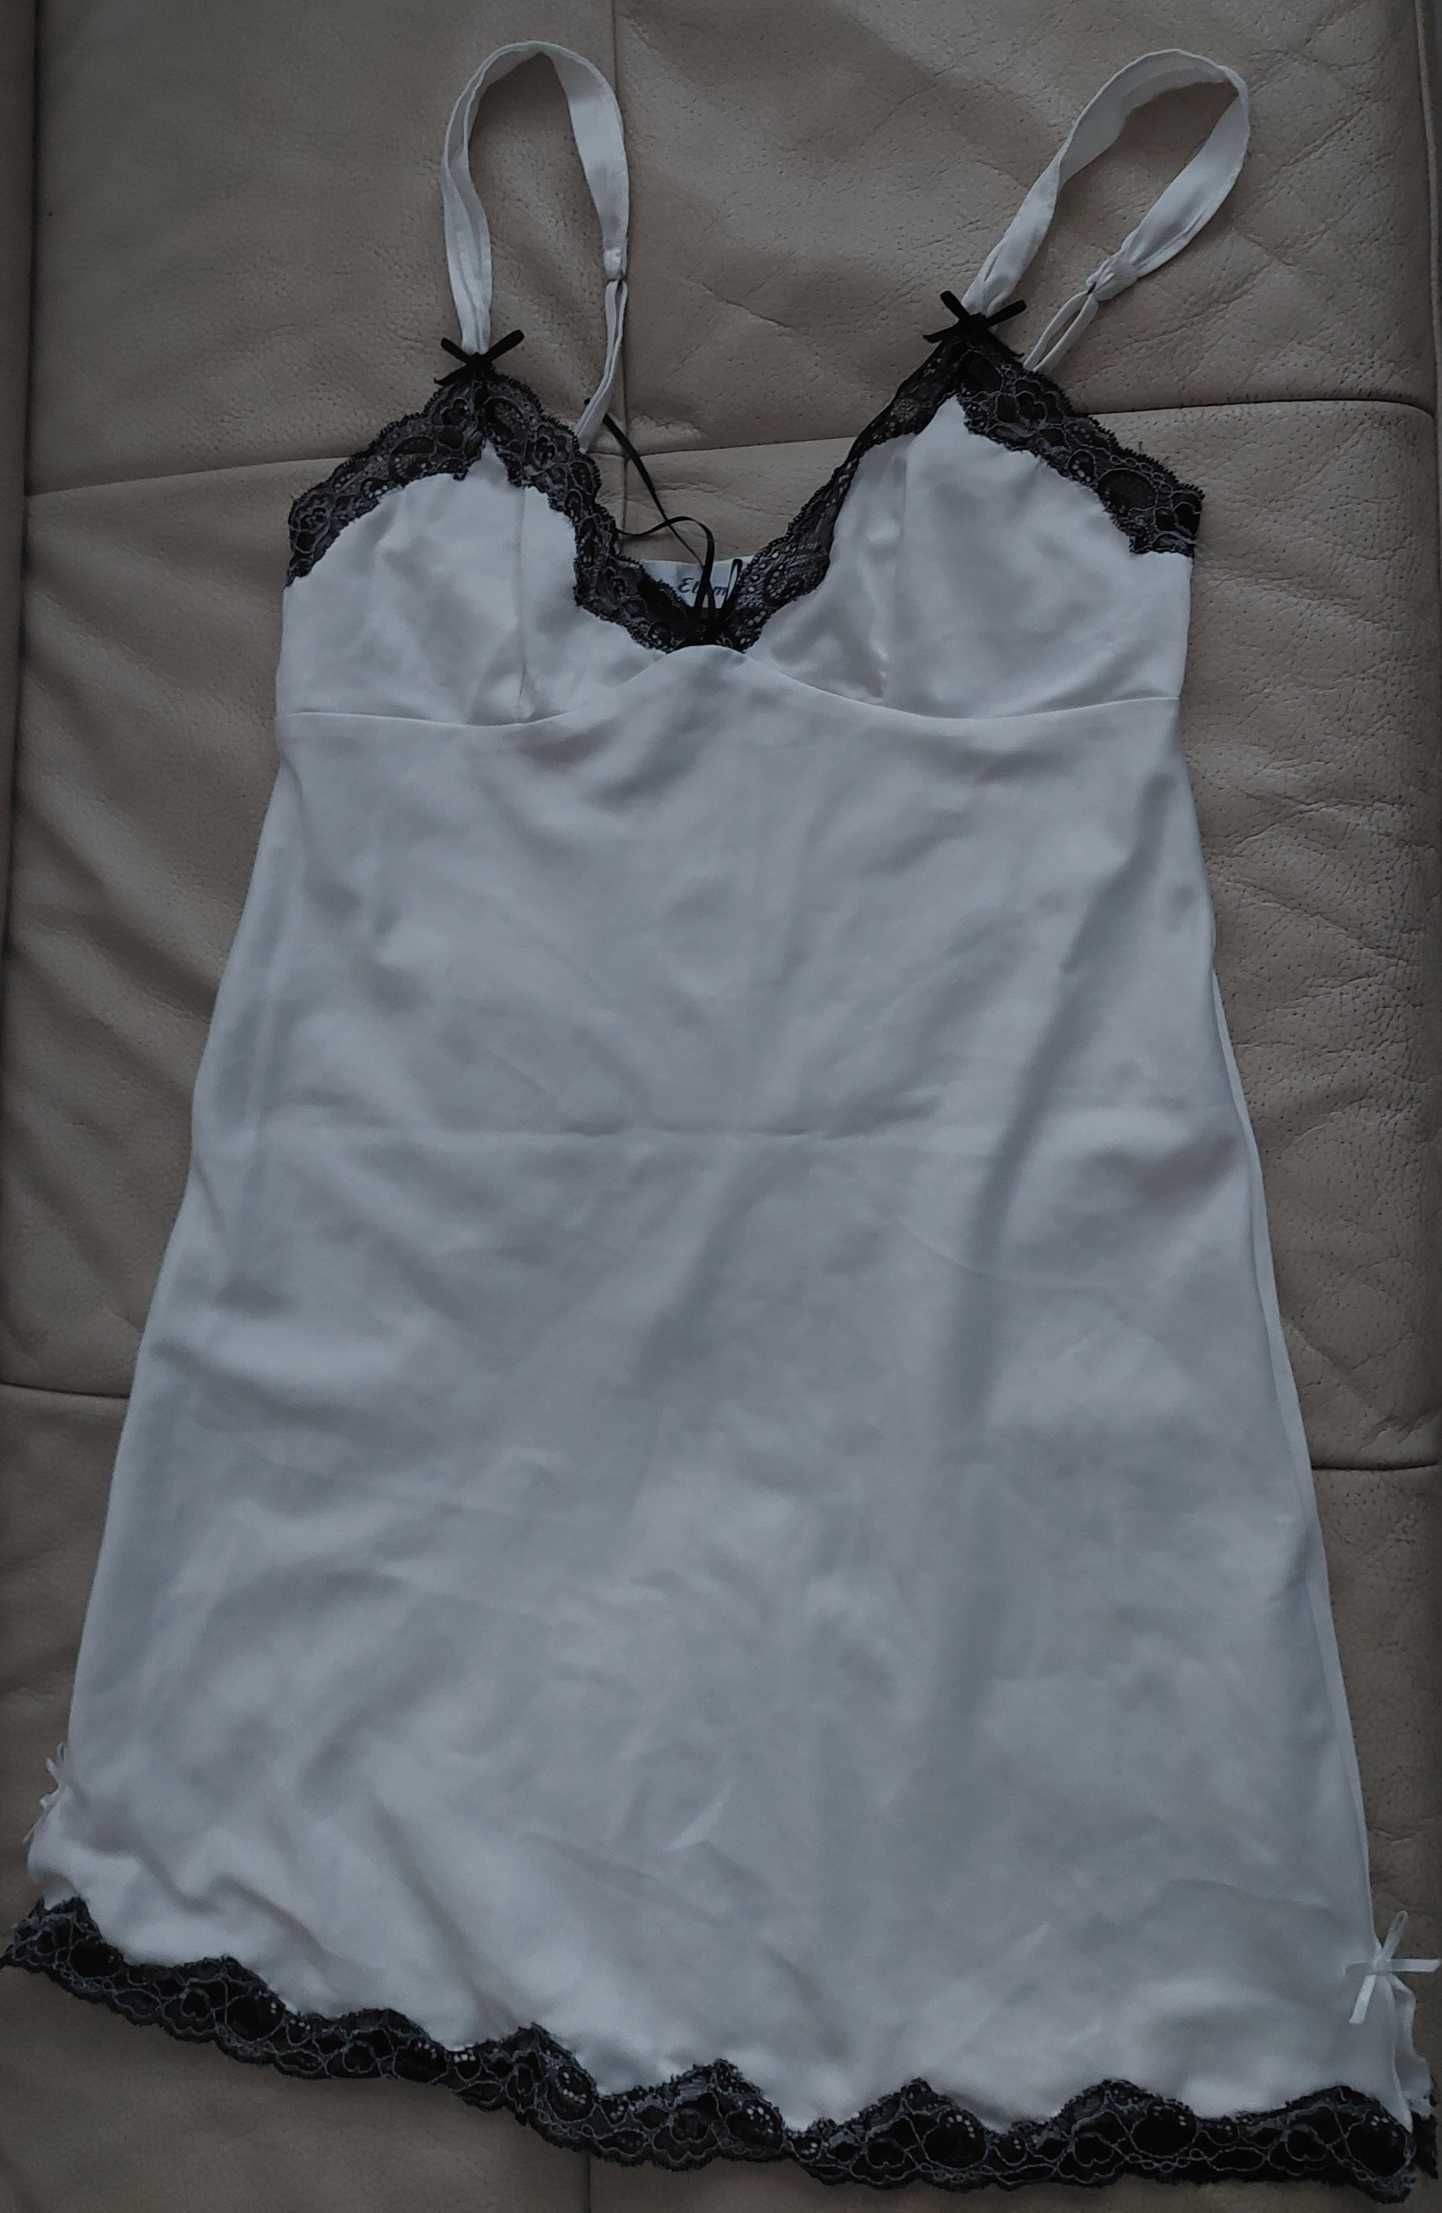 Etam; biała zmysłowa koszulka do spania z czarną koronką, roz. 34